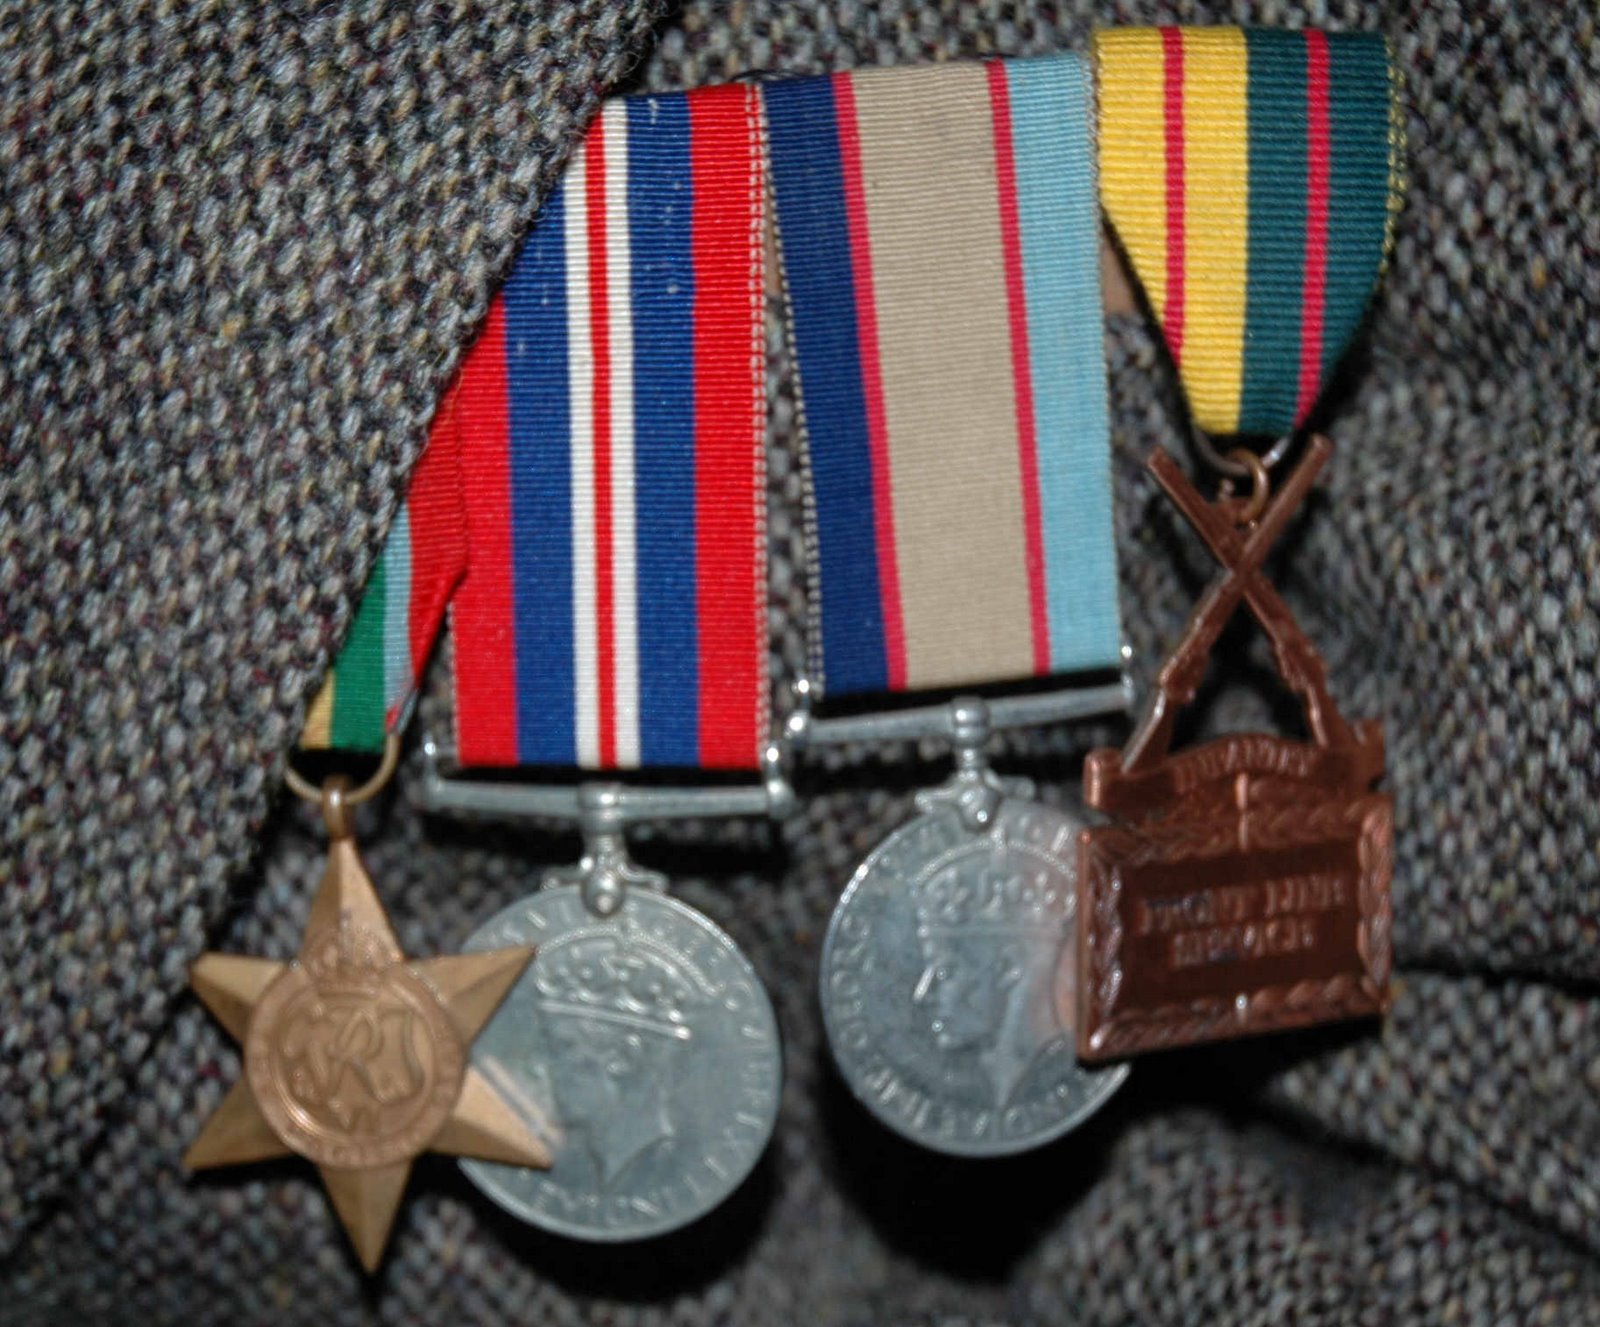 [medals.jpg]